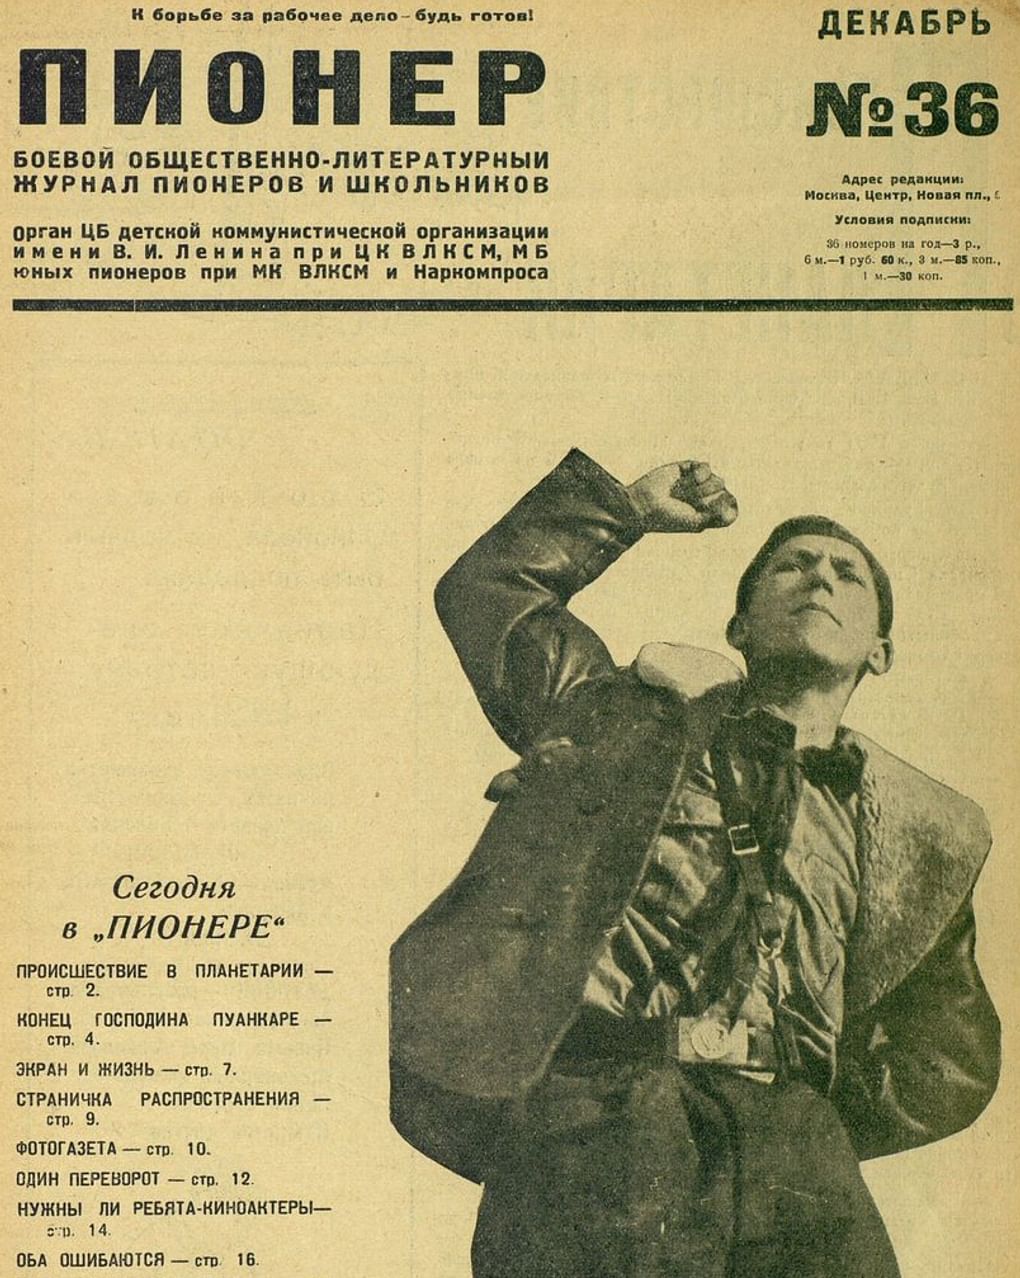 Журнал «Пионер» № 36. Москва: издательство «Молодая гвардия», 1930